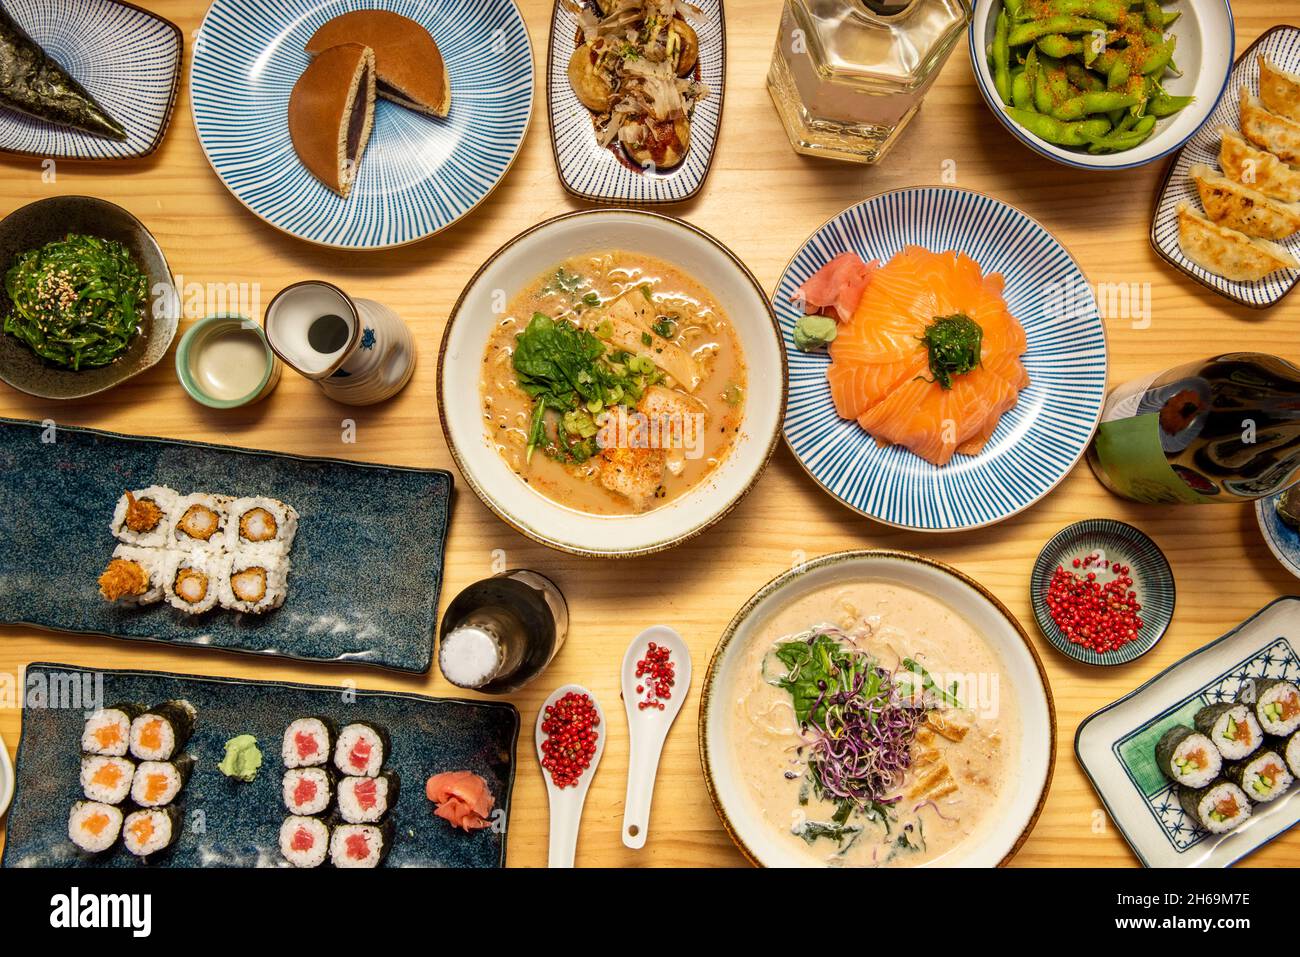 Ensemble de plats japonais, saumon et thon rouge hosomaki, uramaki avec crevettes panées, mochis, miso ramen, salade wakame, poivron rouge,haricots edamame, octop Banque D'Images